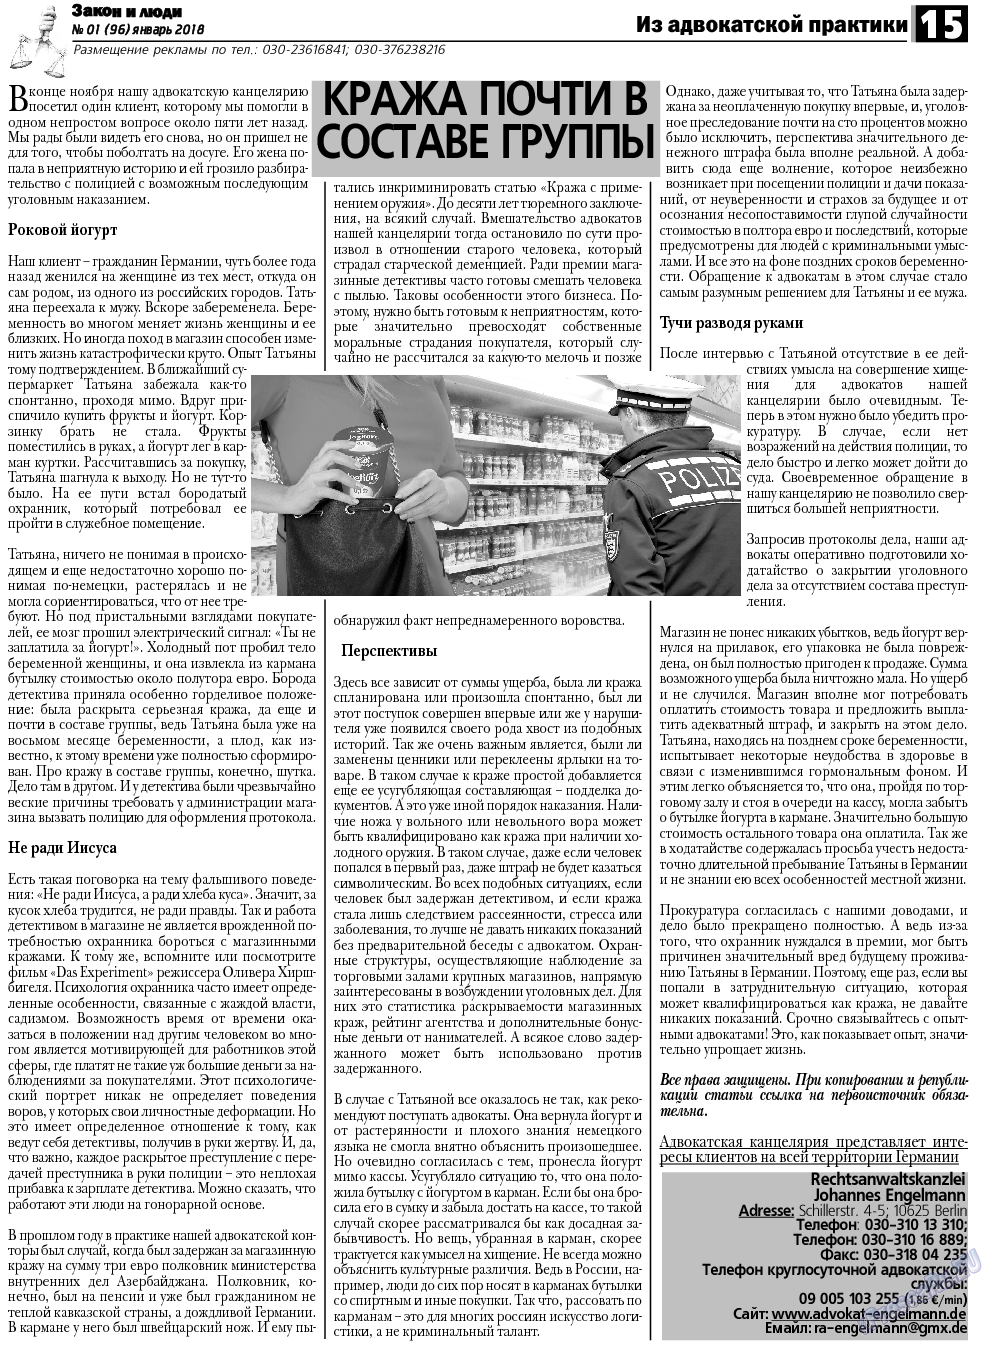 Закон и люди, газета. 2018 №1 стр.15